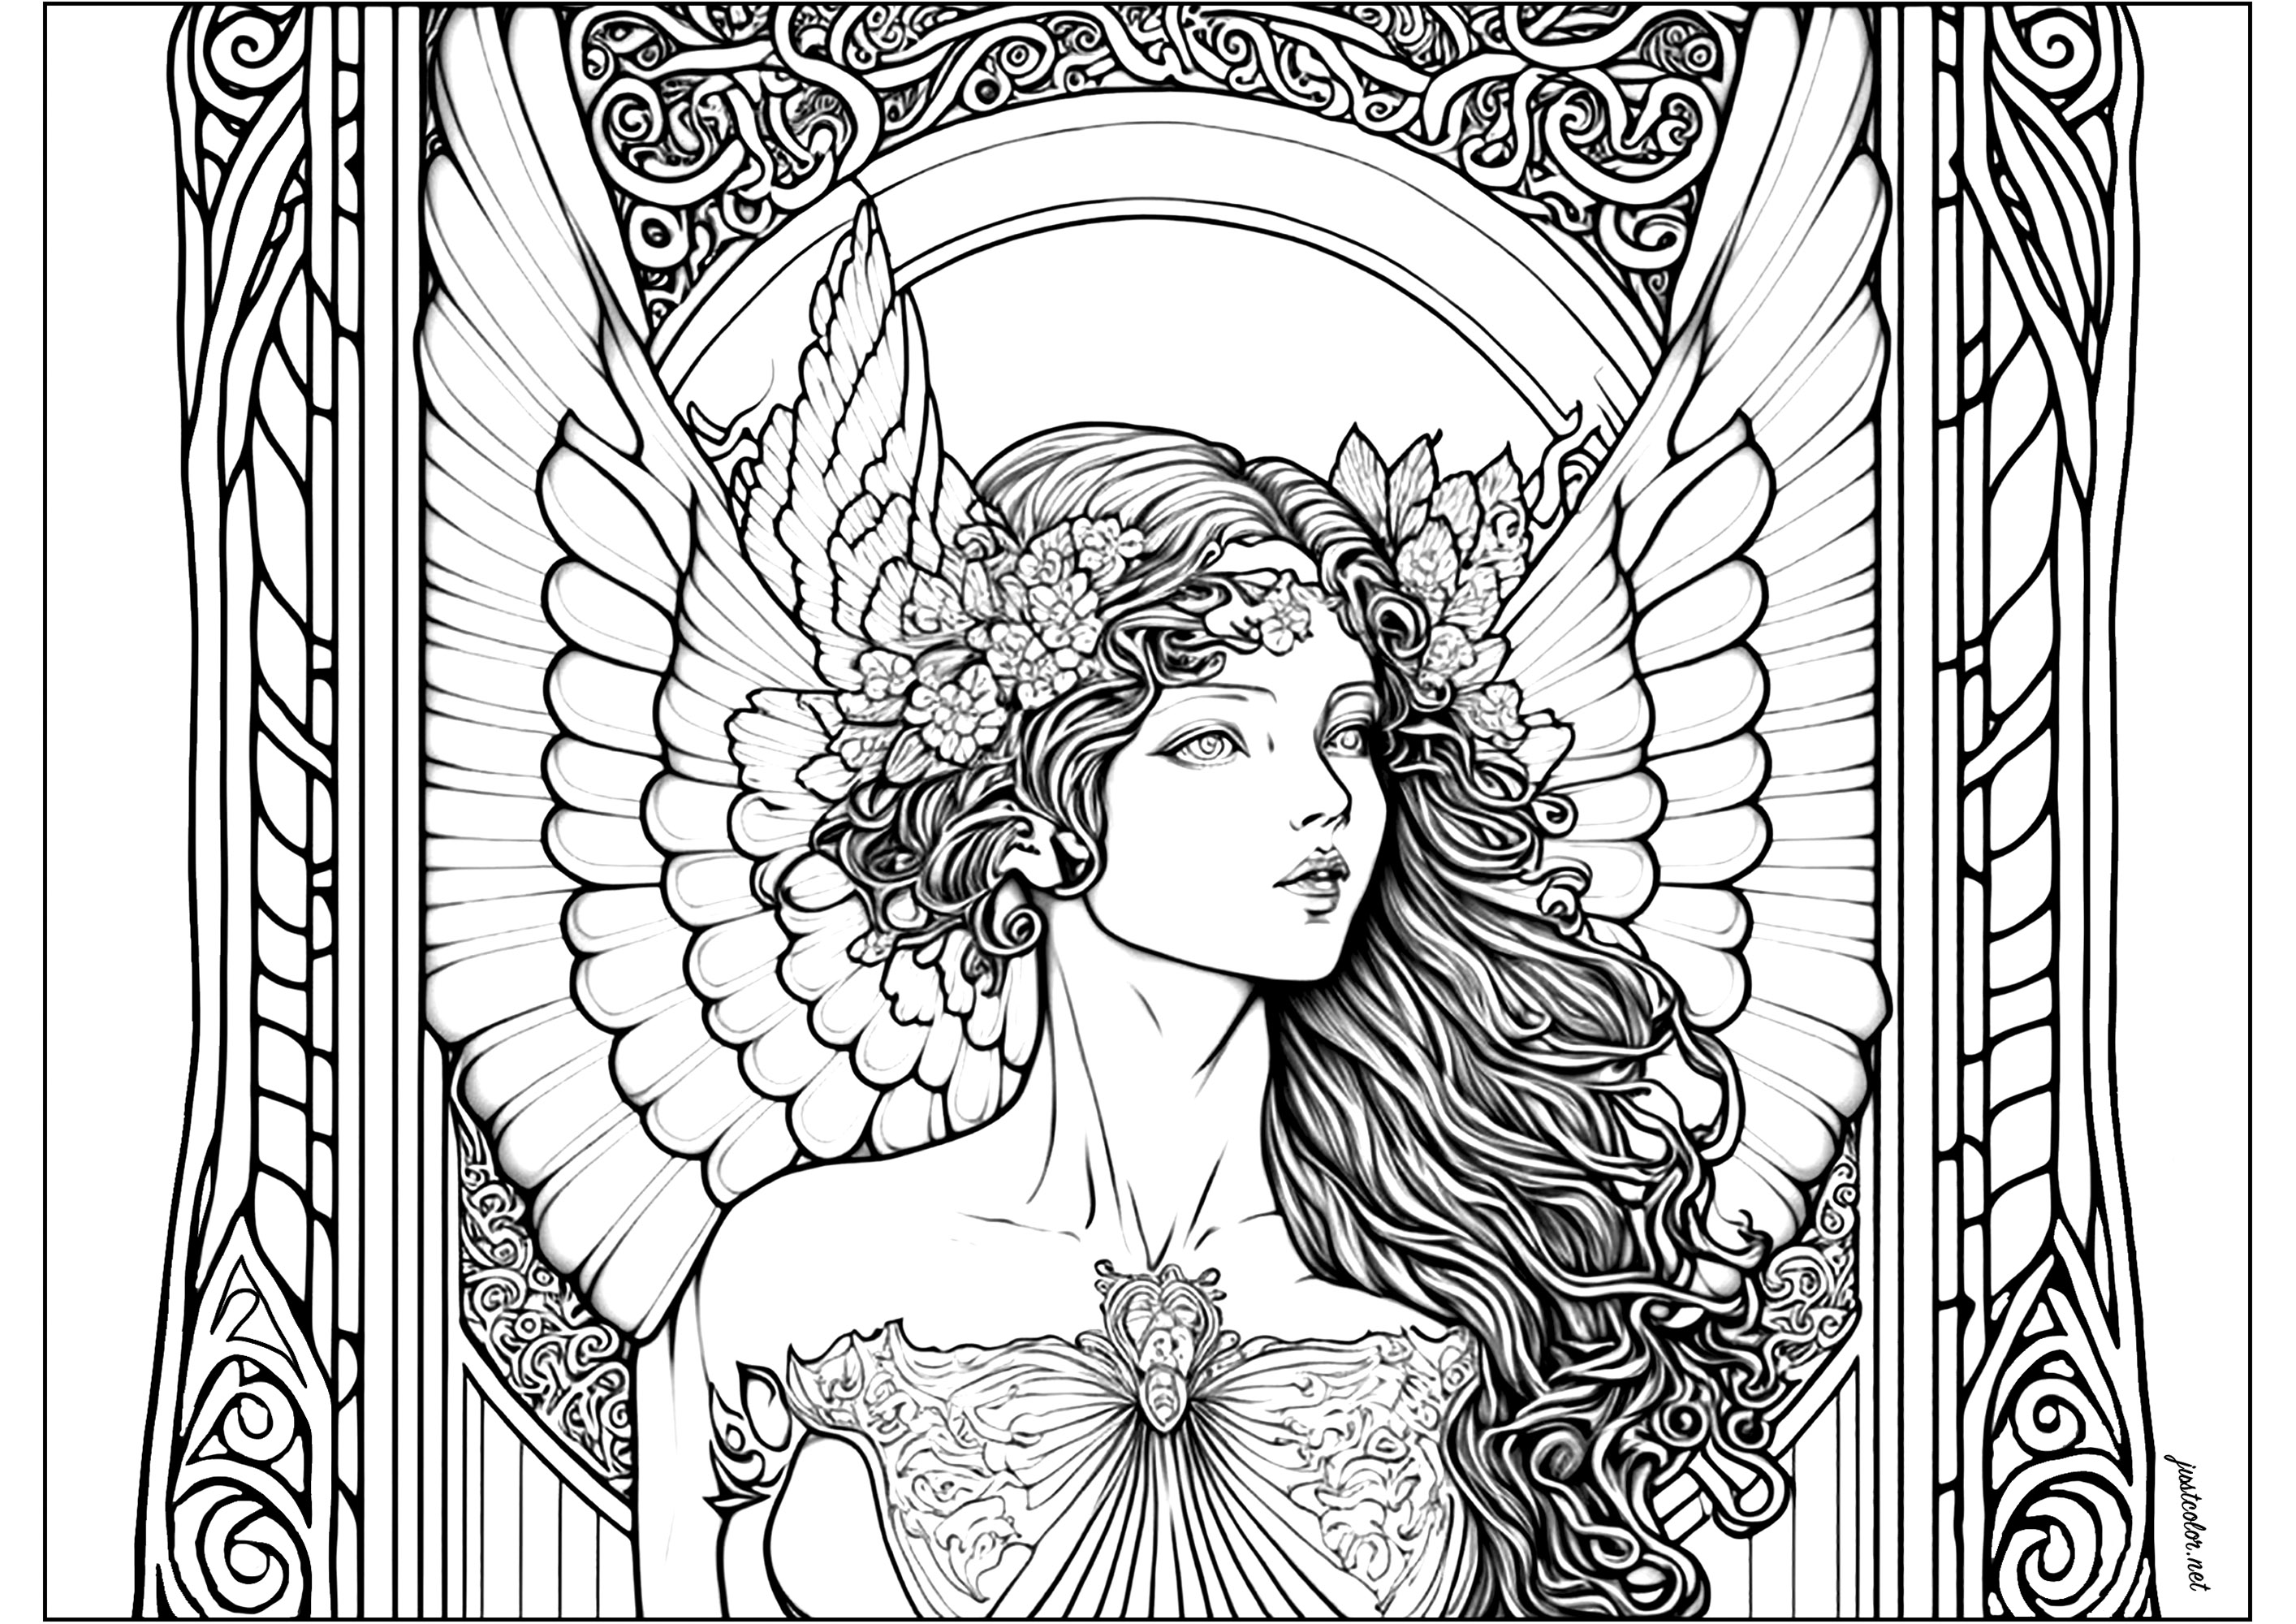 Mulher bonita com asas. Uma bela mulher alada, com motivos livremente inspirados no estilo Art Nouveau. Os contornos são delicados e pormenorizados, e o olhar da figura inspira a contemplação e o desprendimento.